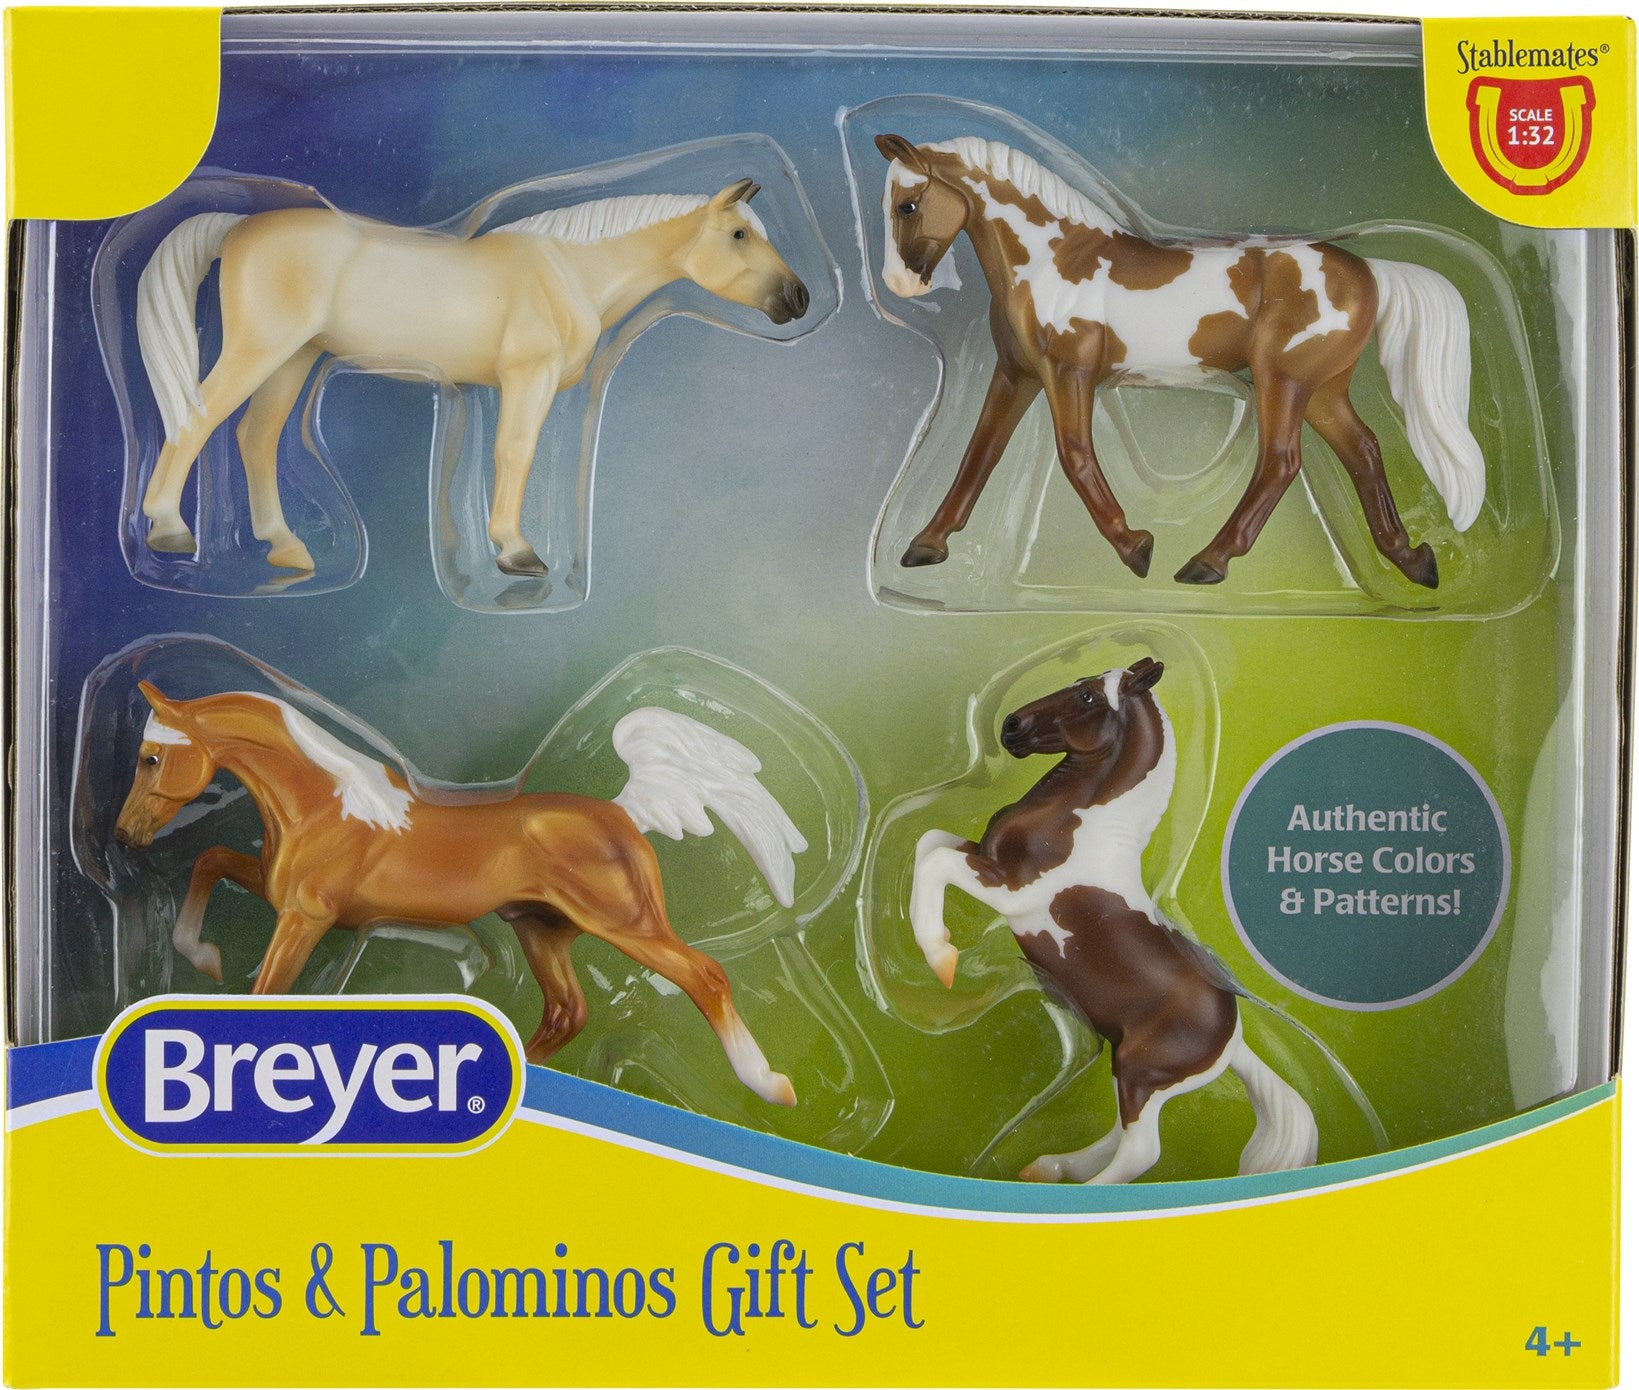 Breyer Stablemates Pintos & Palominos Gift Set